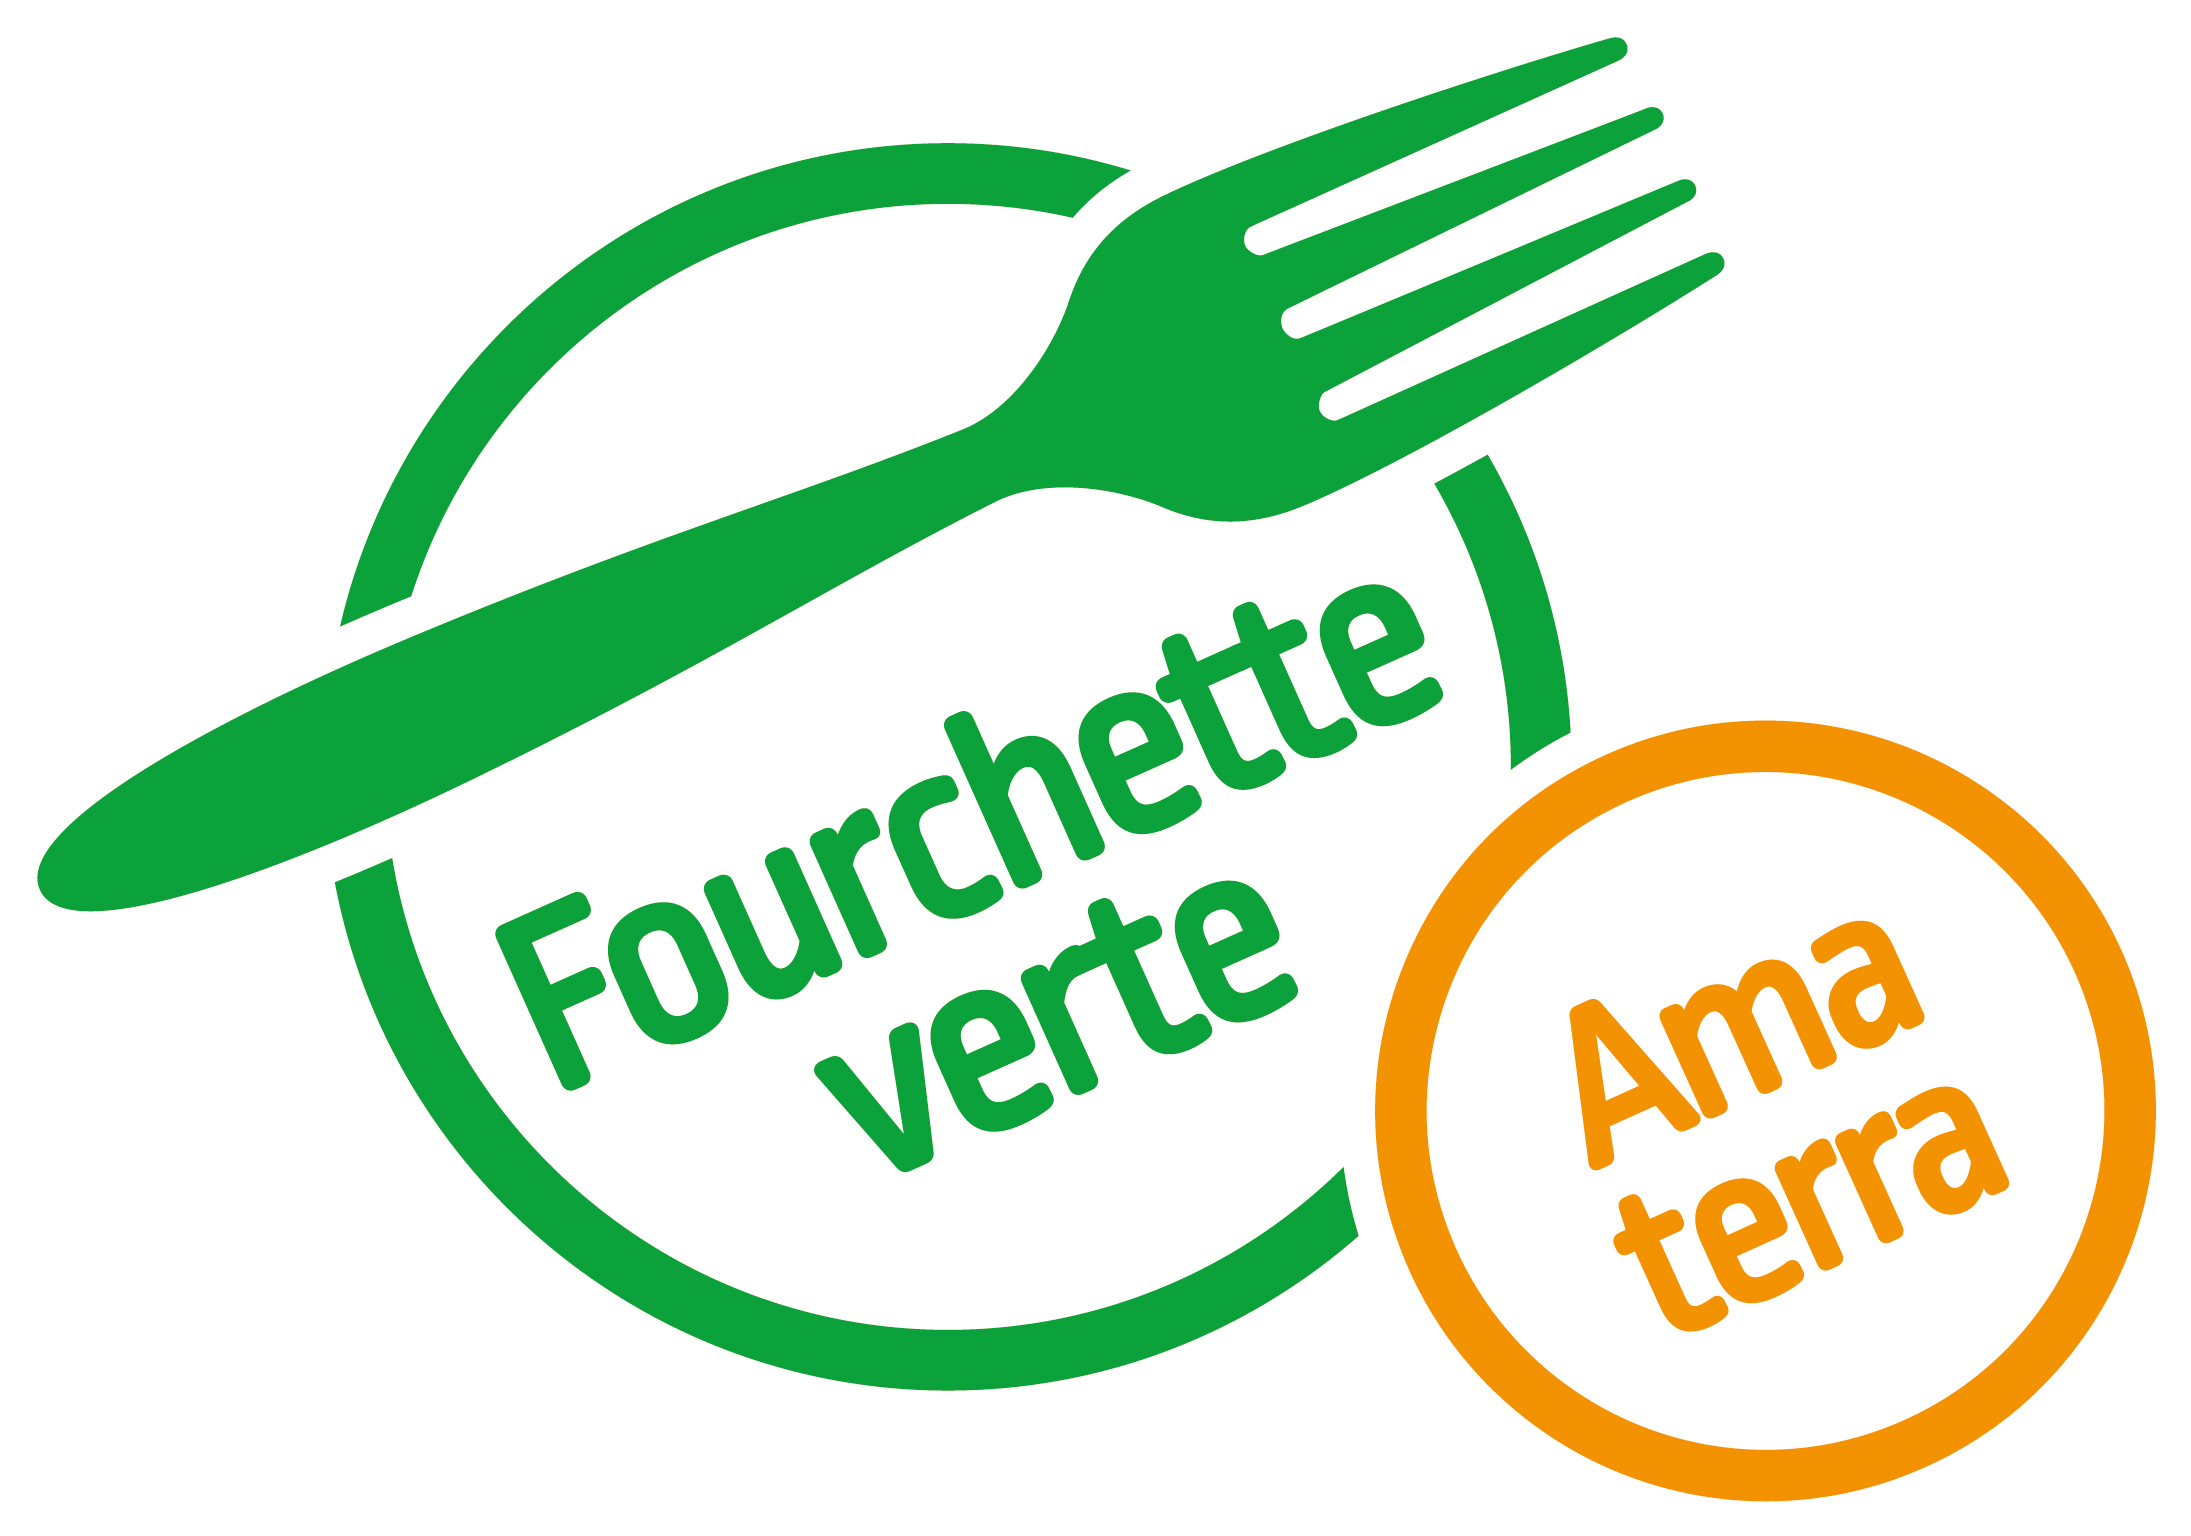 Logofourchette